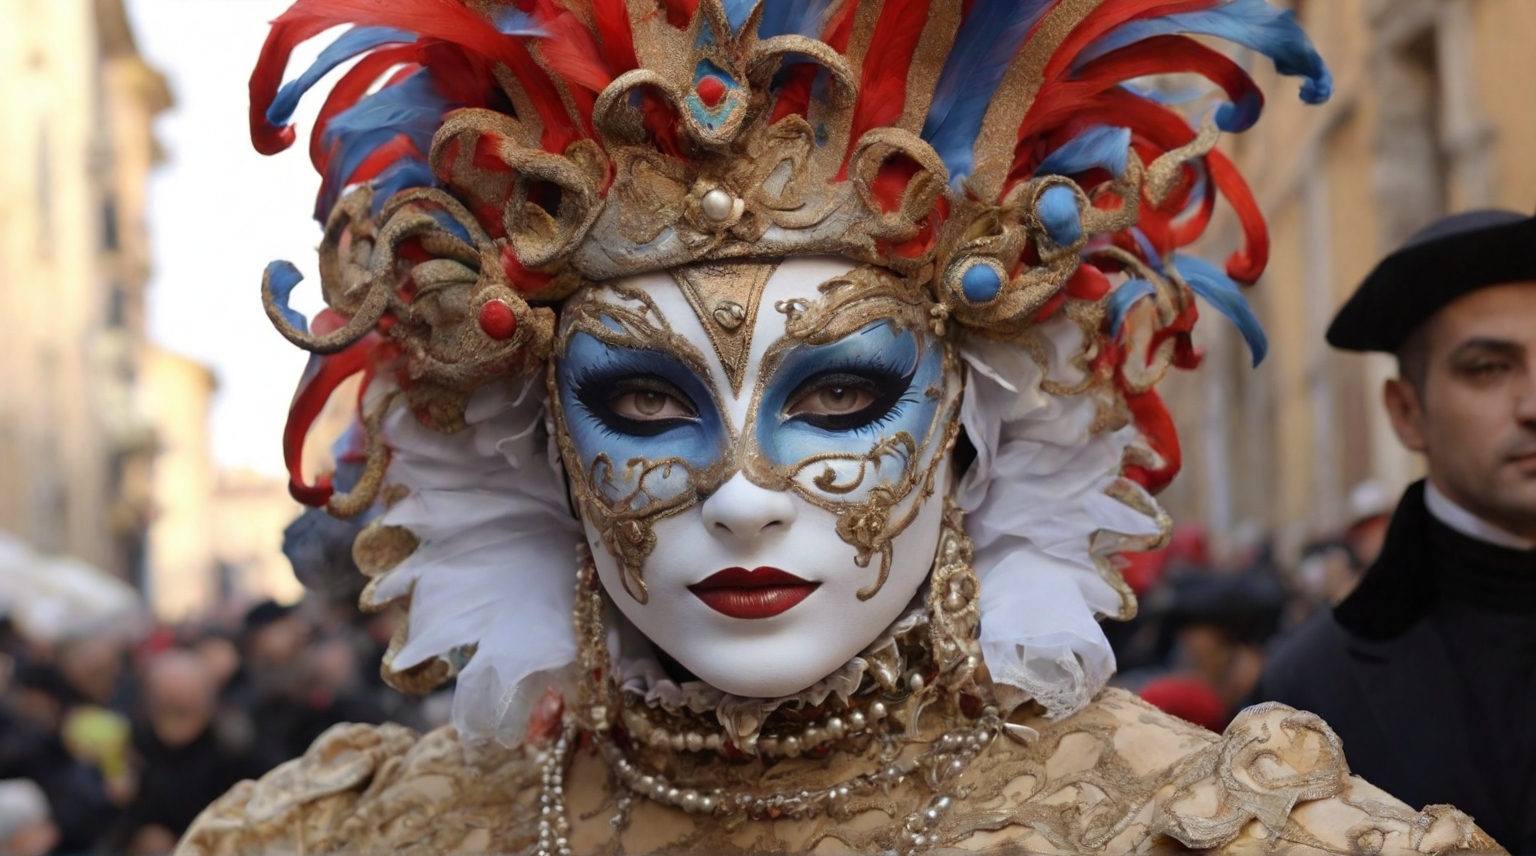 Il Carnevale in Italia Una Festa di Colori, Maschere e Allegria